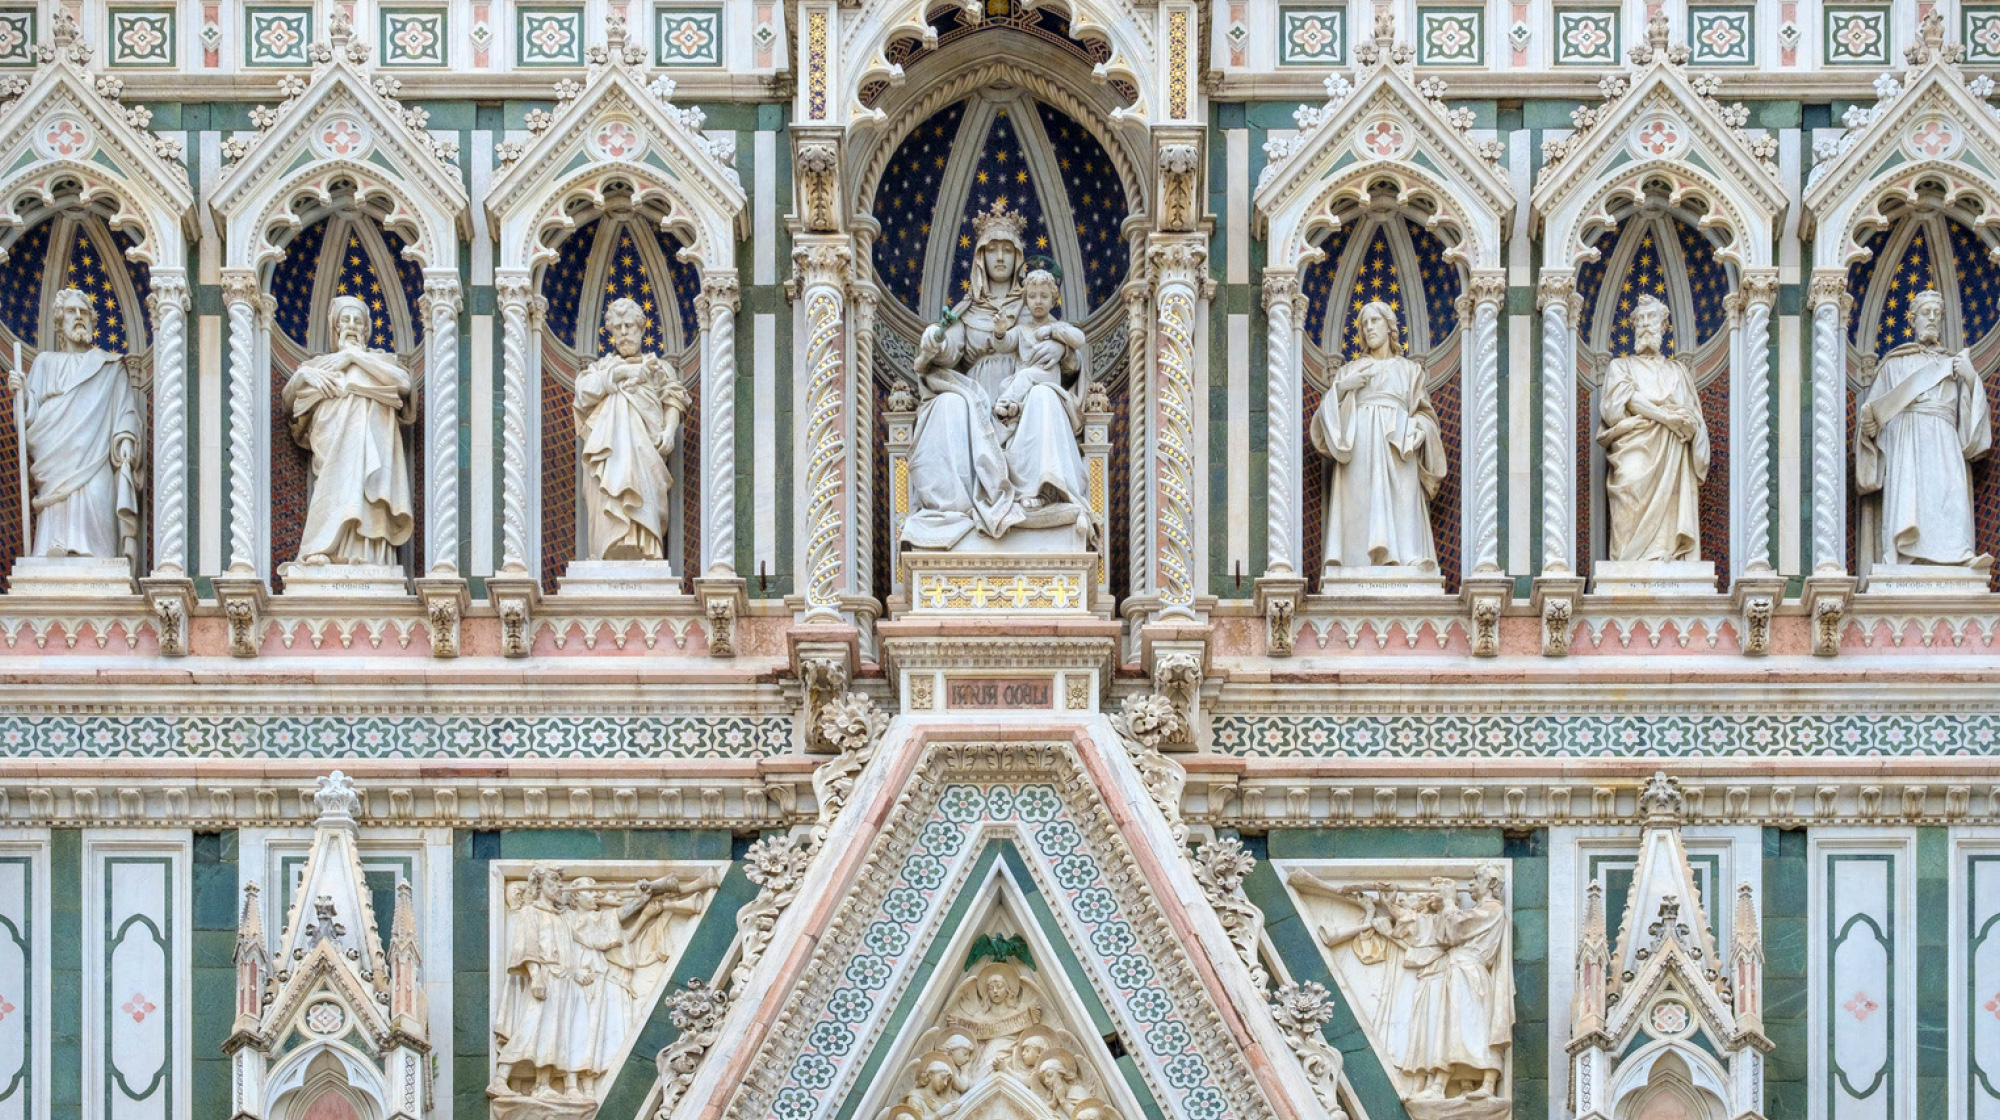 La facciata della Cattedrale di Santa Maria del Fiore (dettaglio)